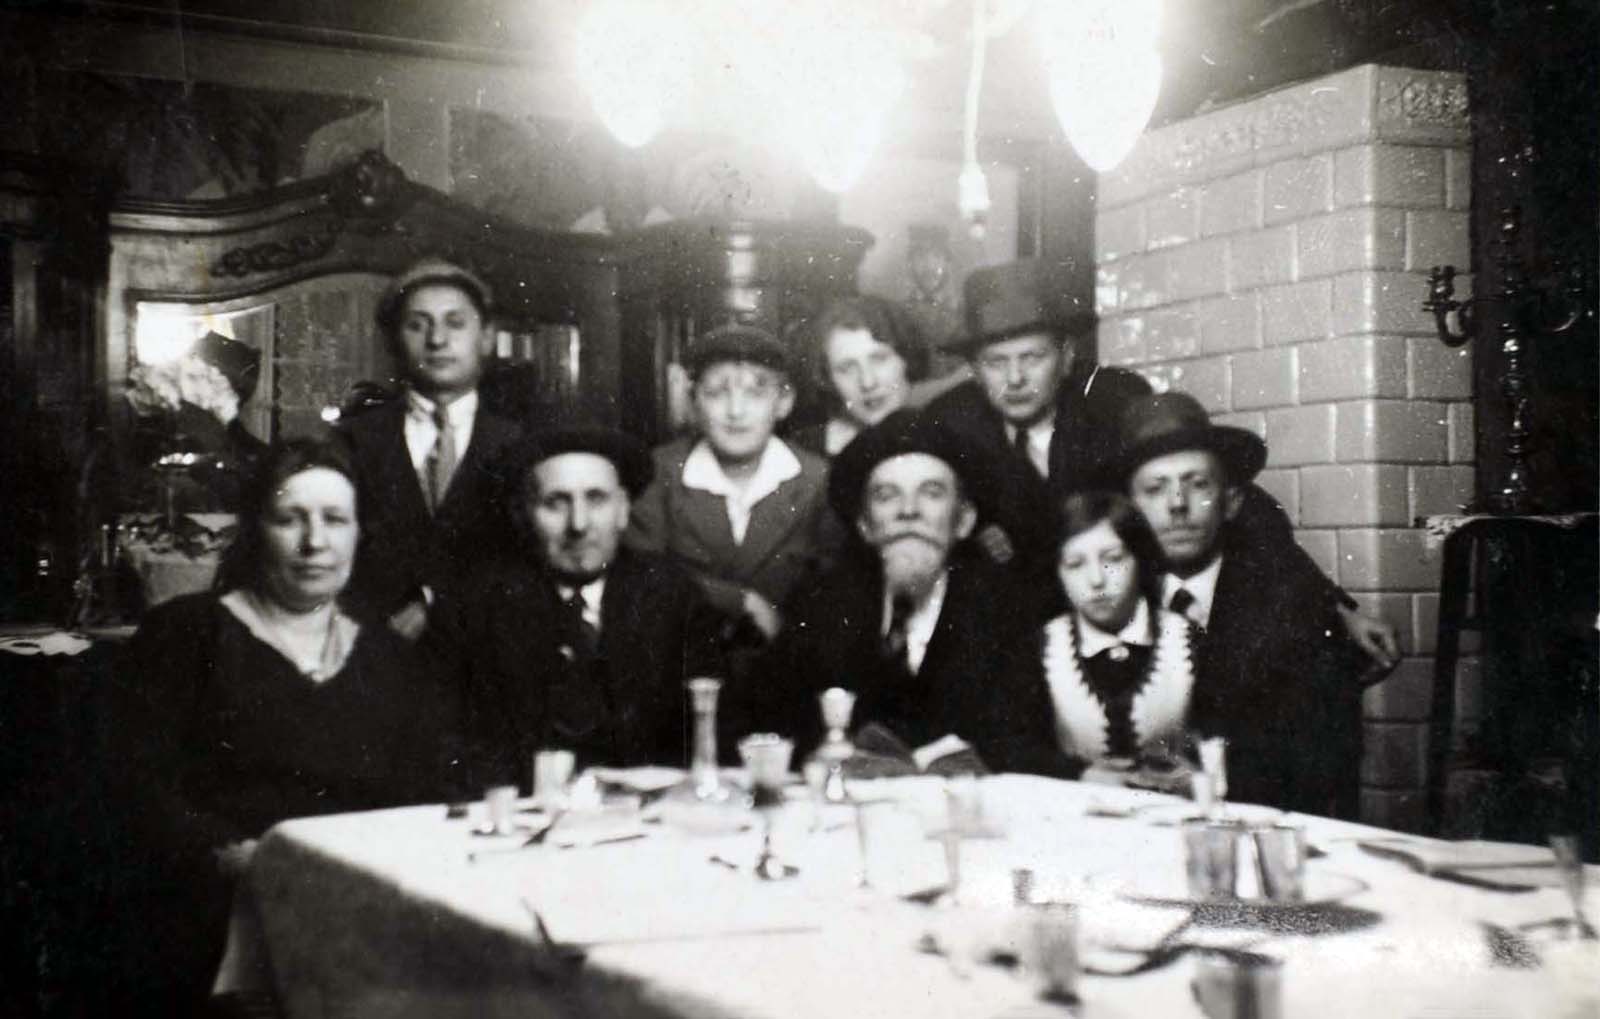 משפחת בוכהלטר (משפחתו של מוסר התצלום) במהלך סדר פסח בוורשה, פולין, 1933 